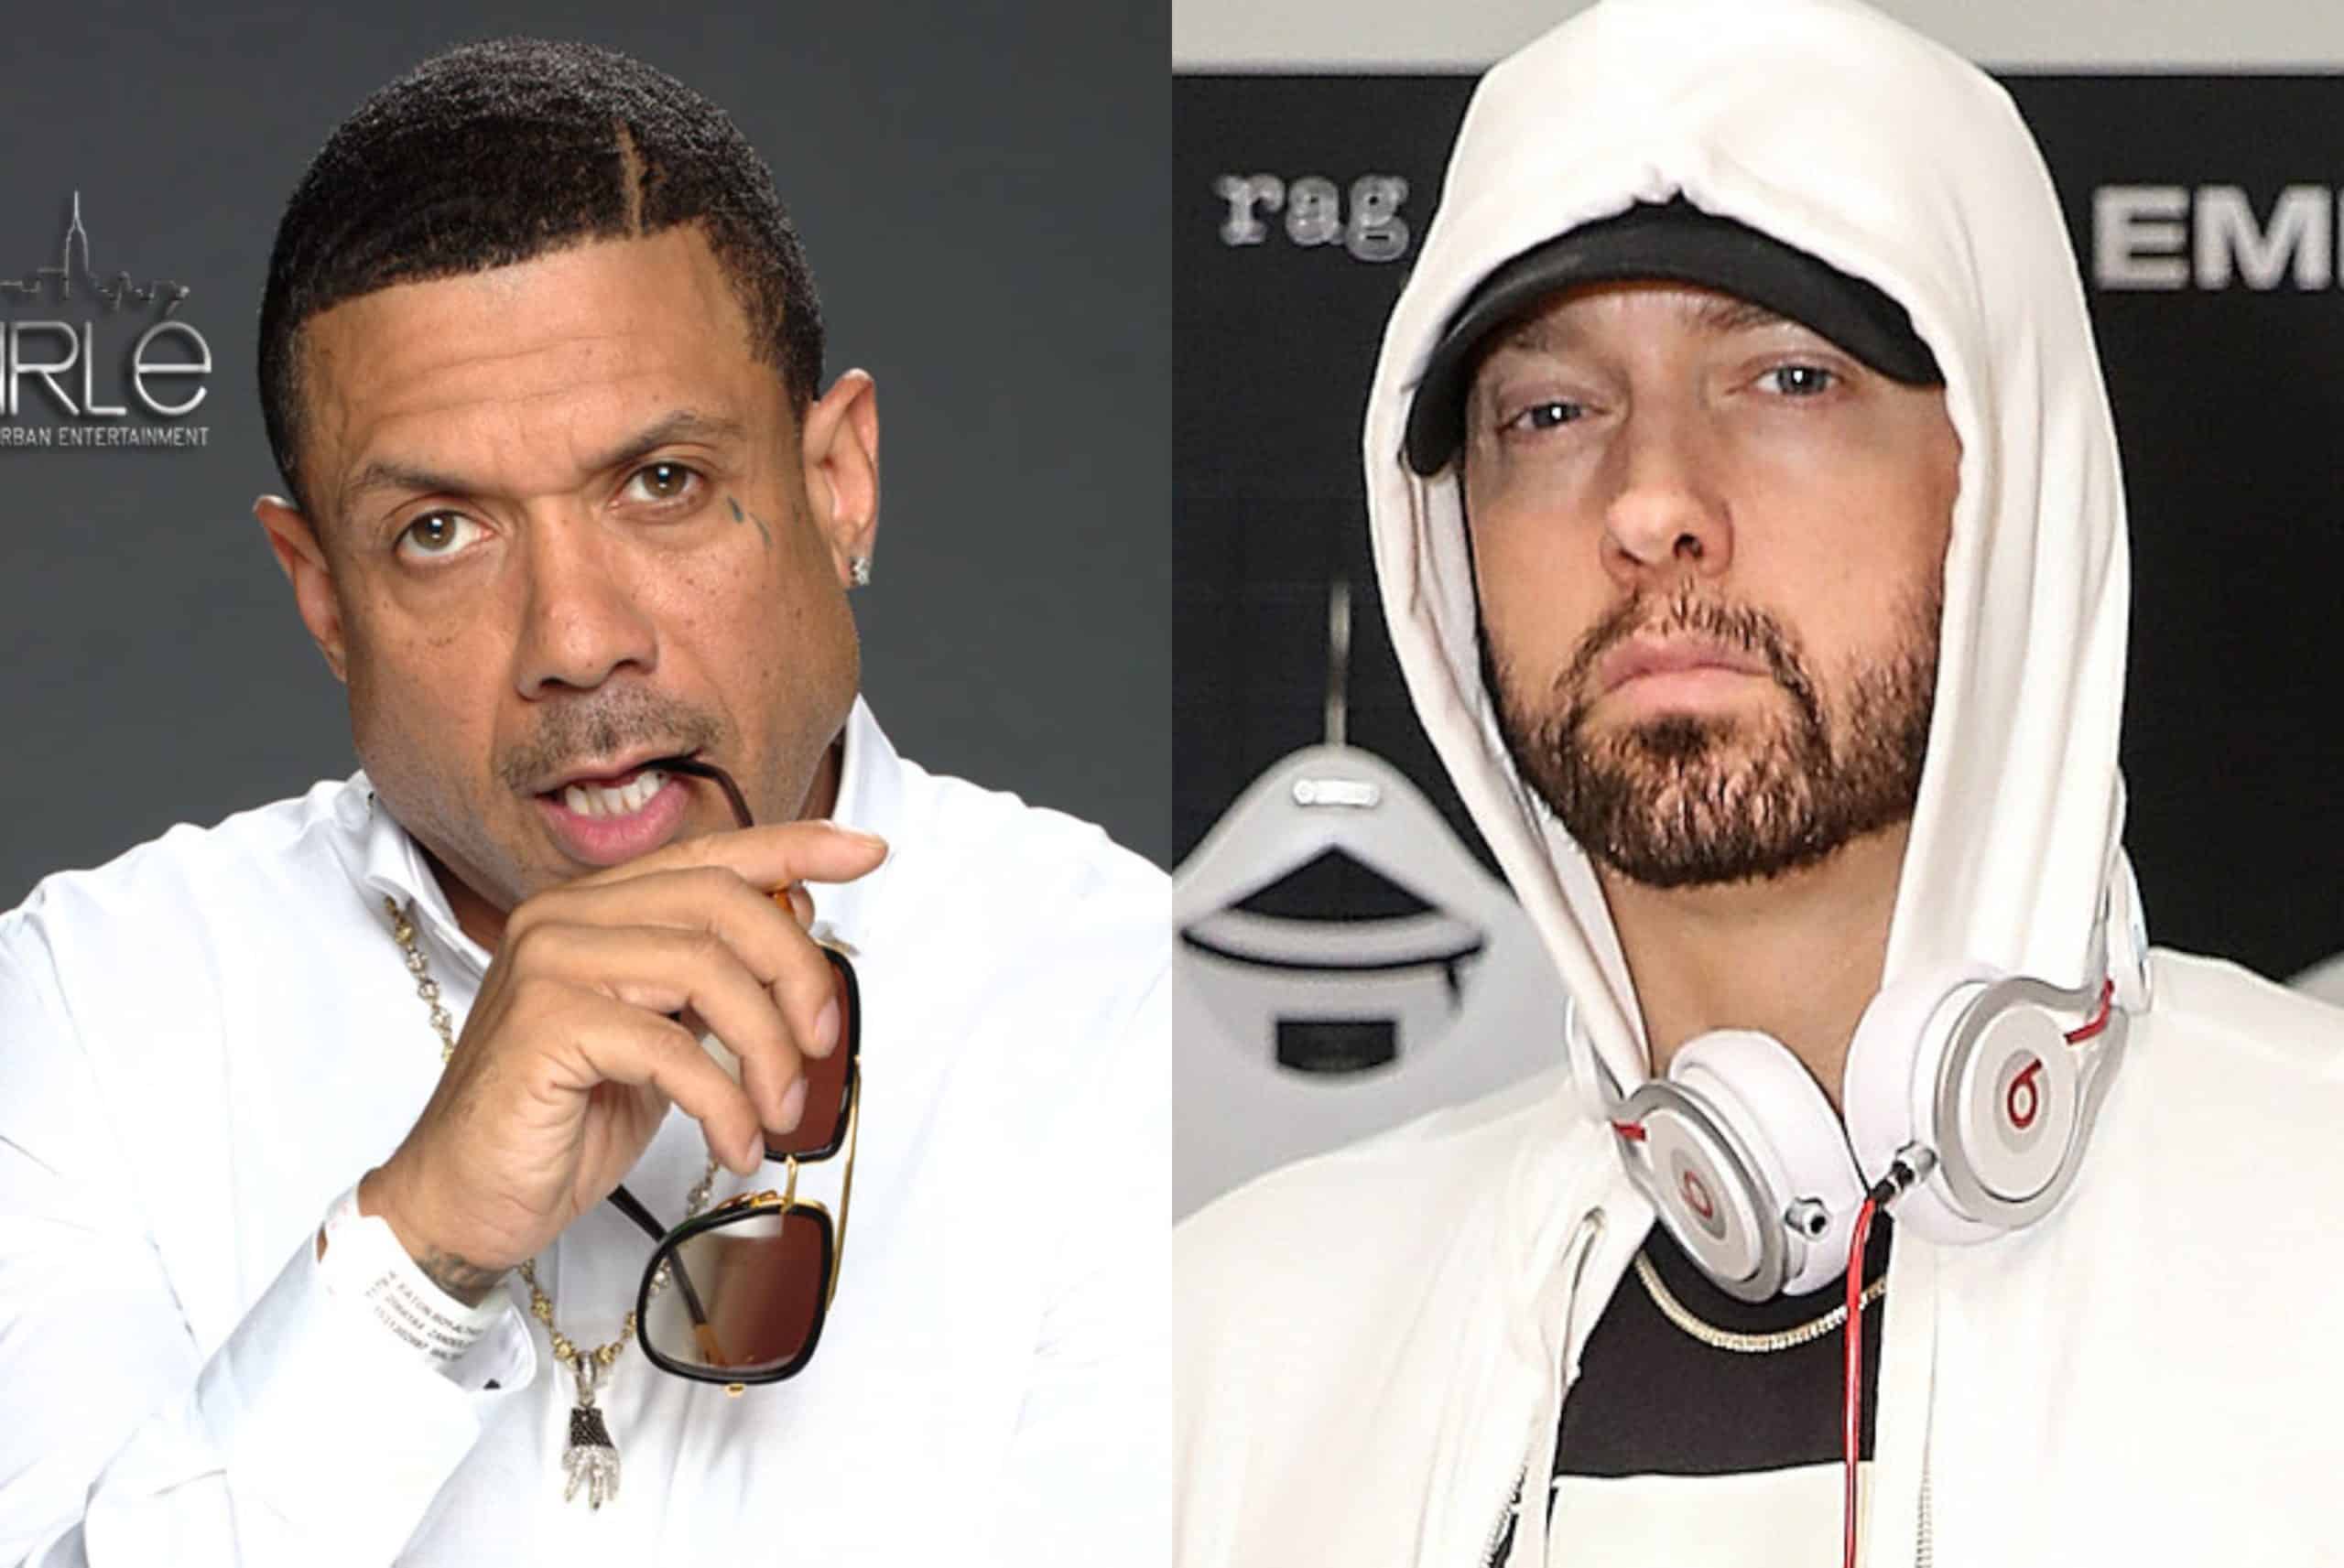 Benzino Explains Why He Dissed Eminem: 